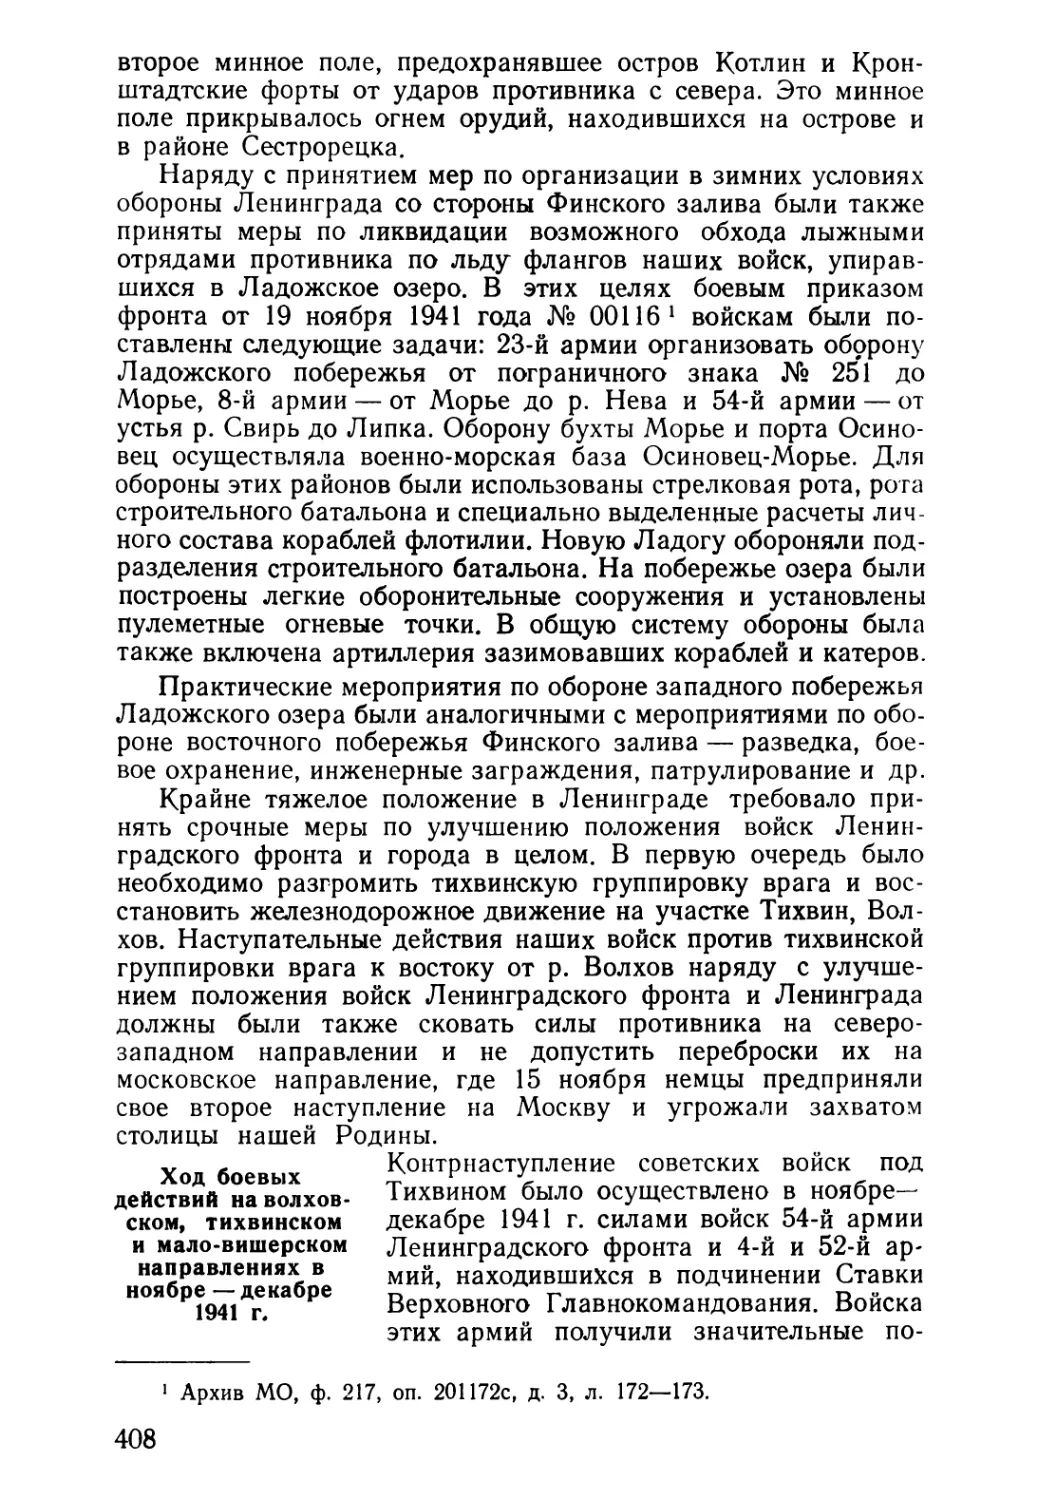 Ход боевых действий на волховском, тихвинском и маловишерском направлениях в ноябре — декабре 1941 г